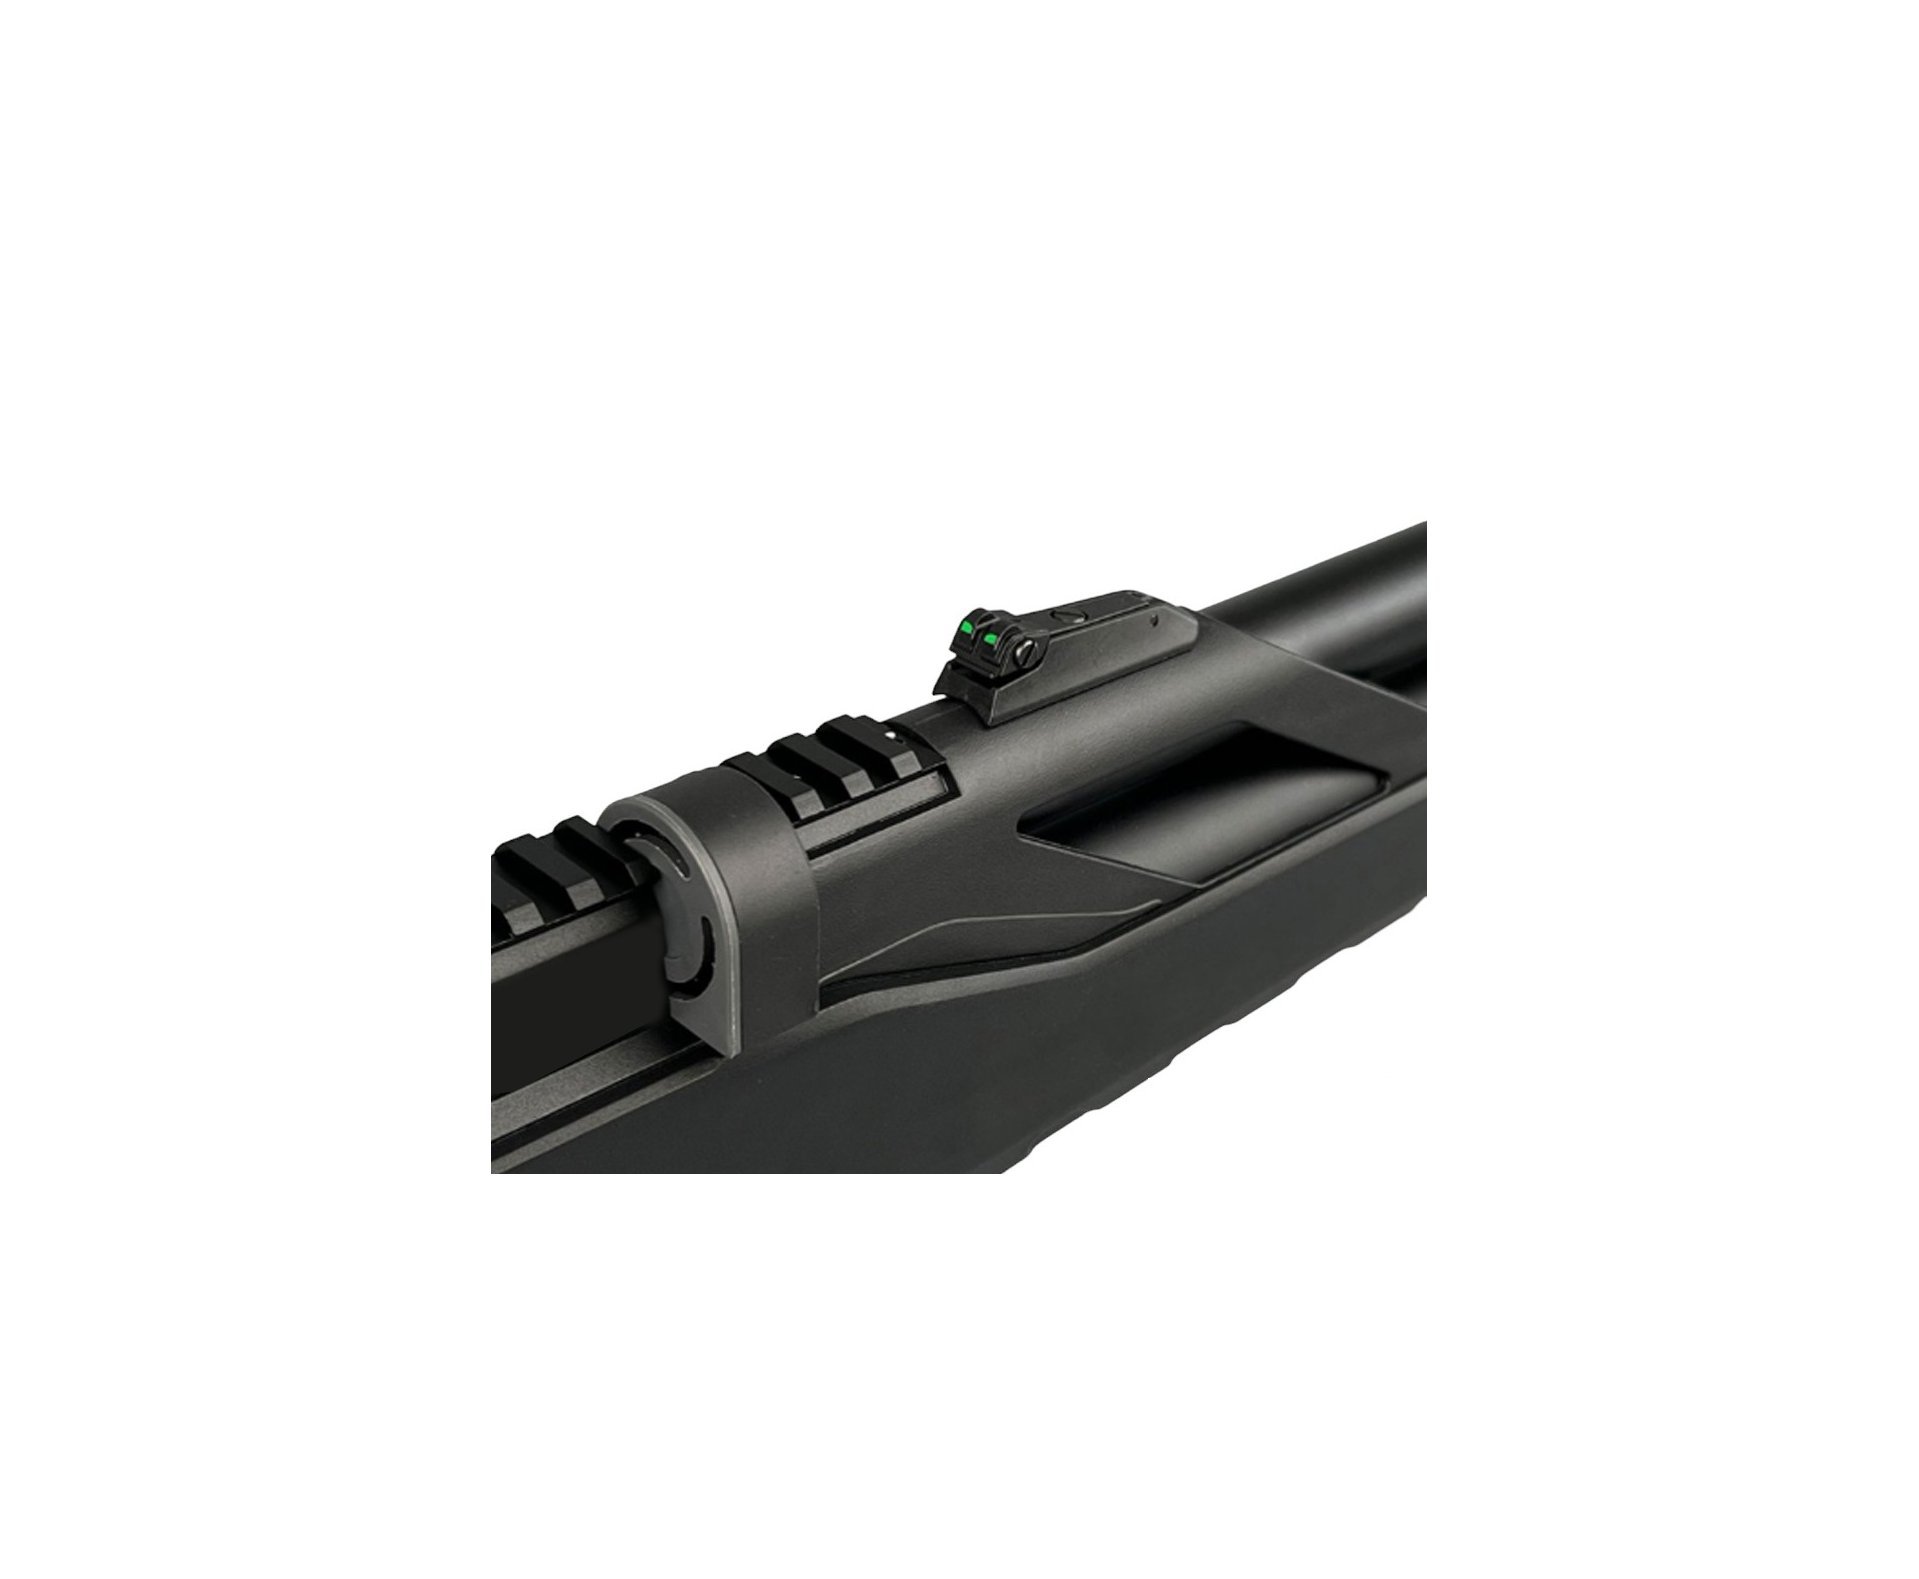 Carabina de Pressão PCP Artemis T-REX 4.5mm com Válvula Reguladora - Fixxar + Compressor